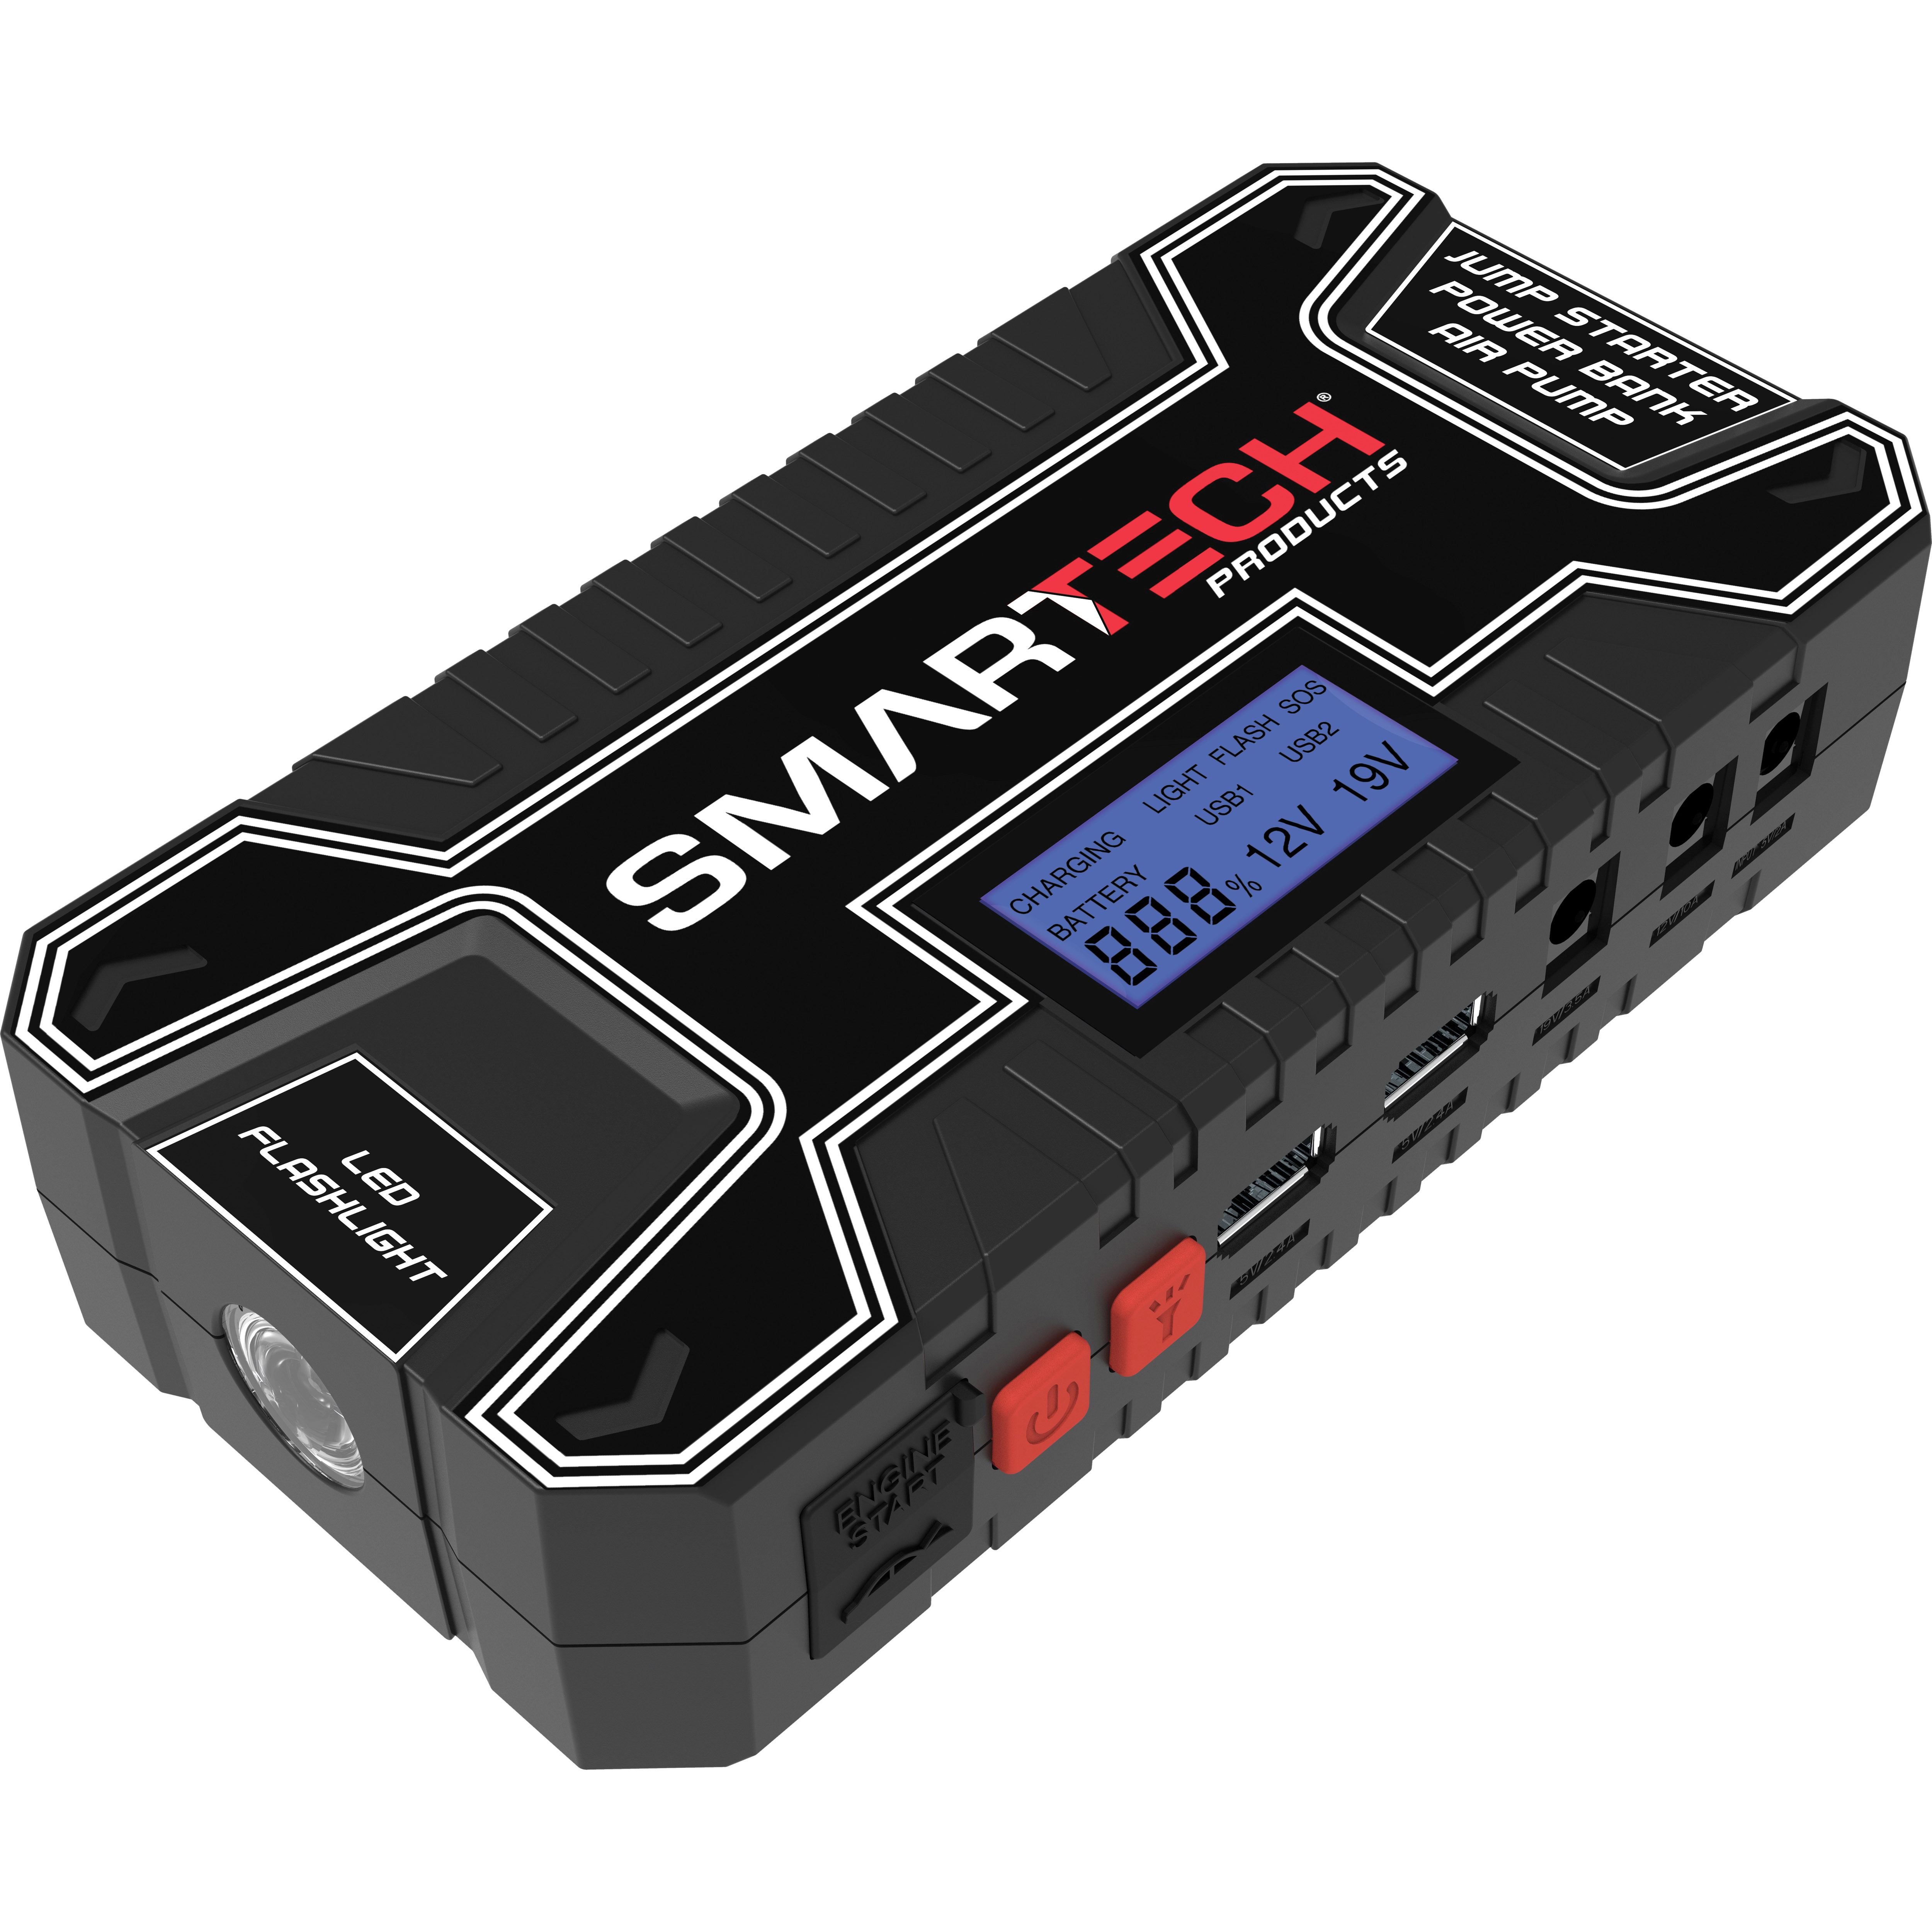 SMARTECH TECH-5000P Power Kit, Portable - 2